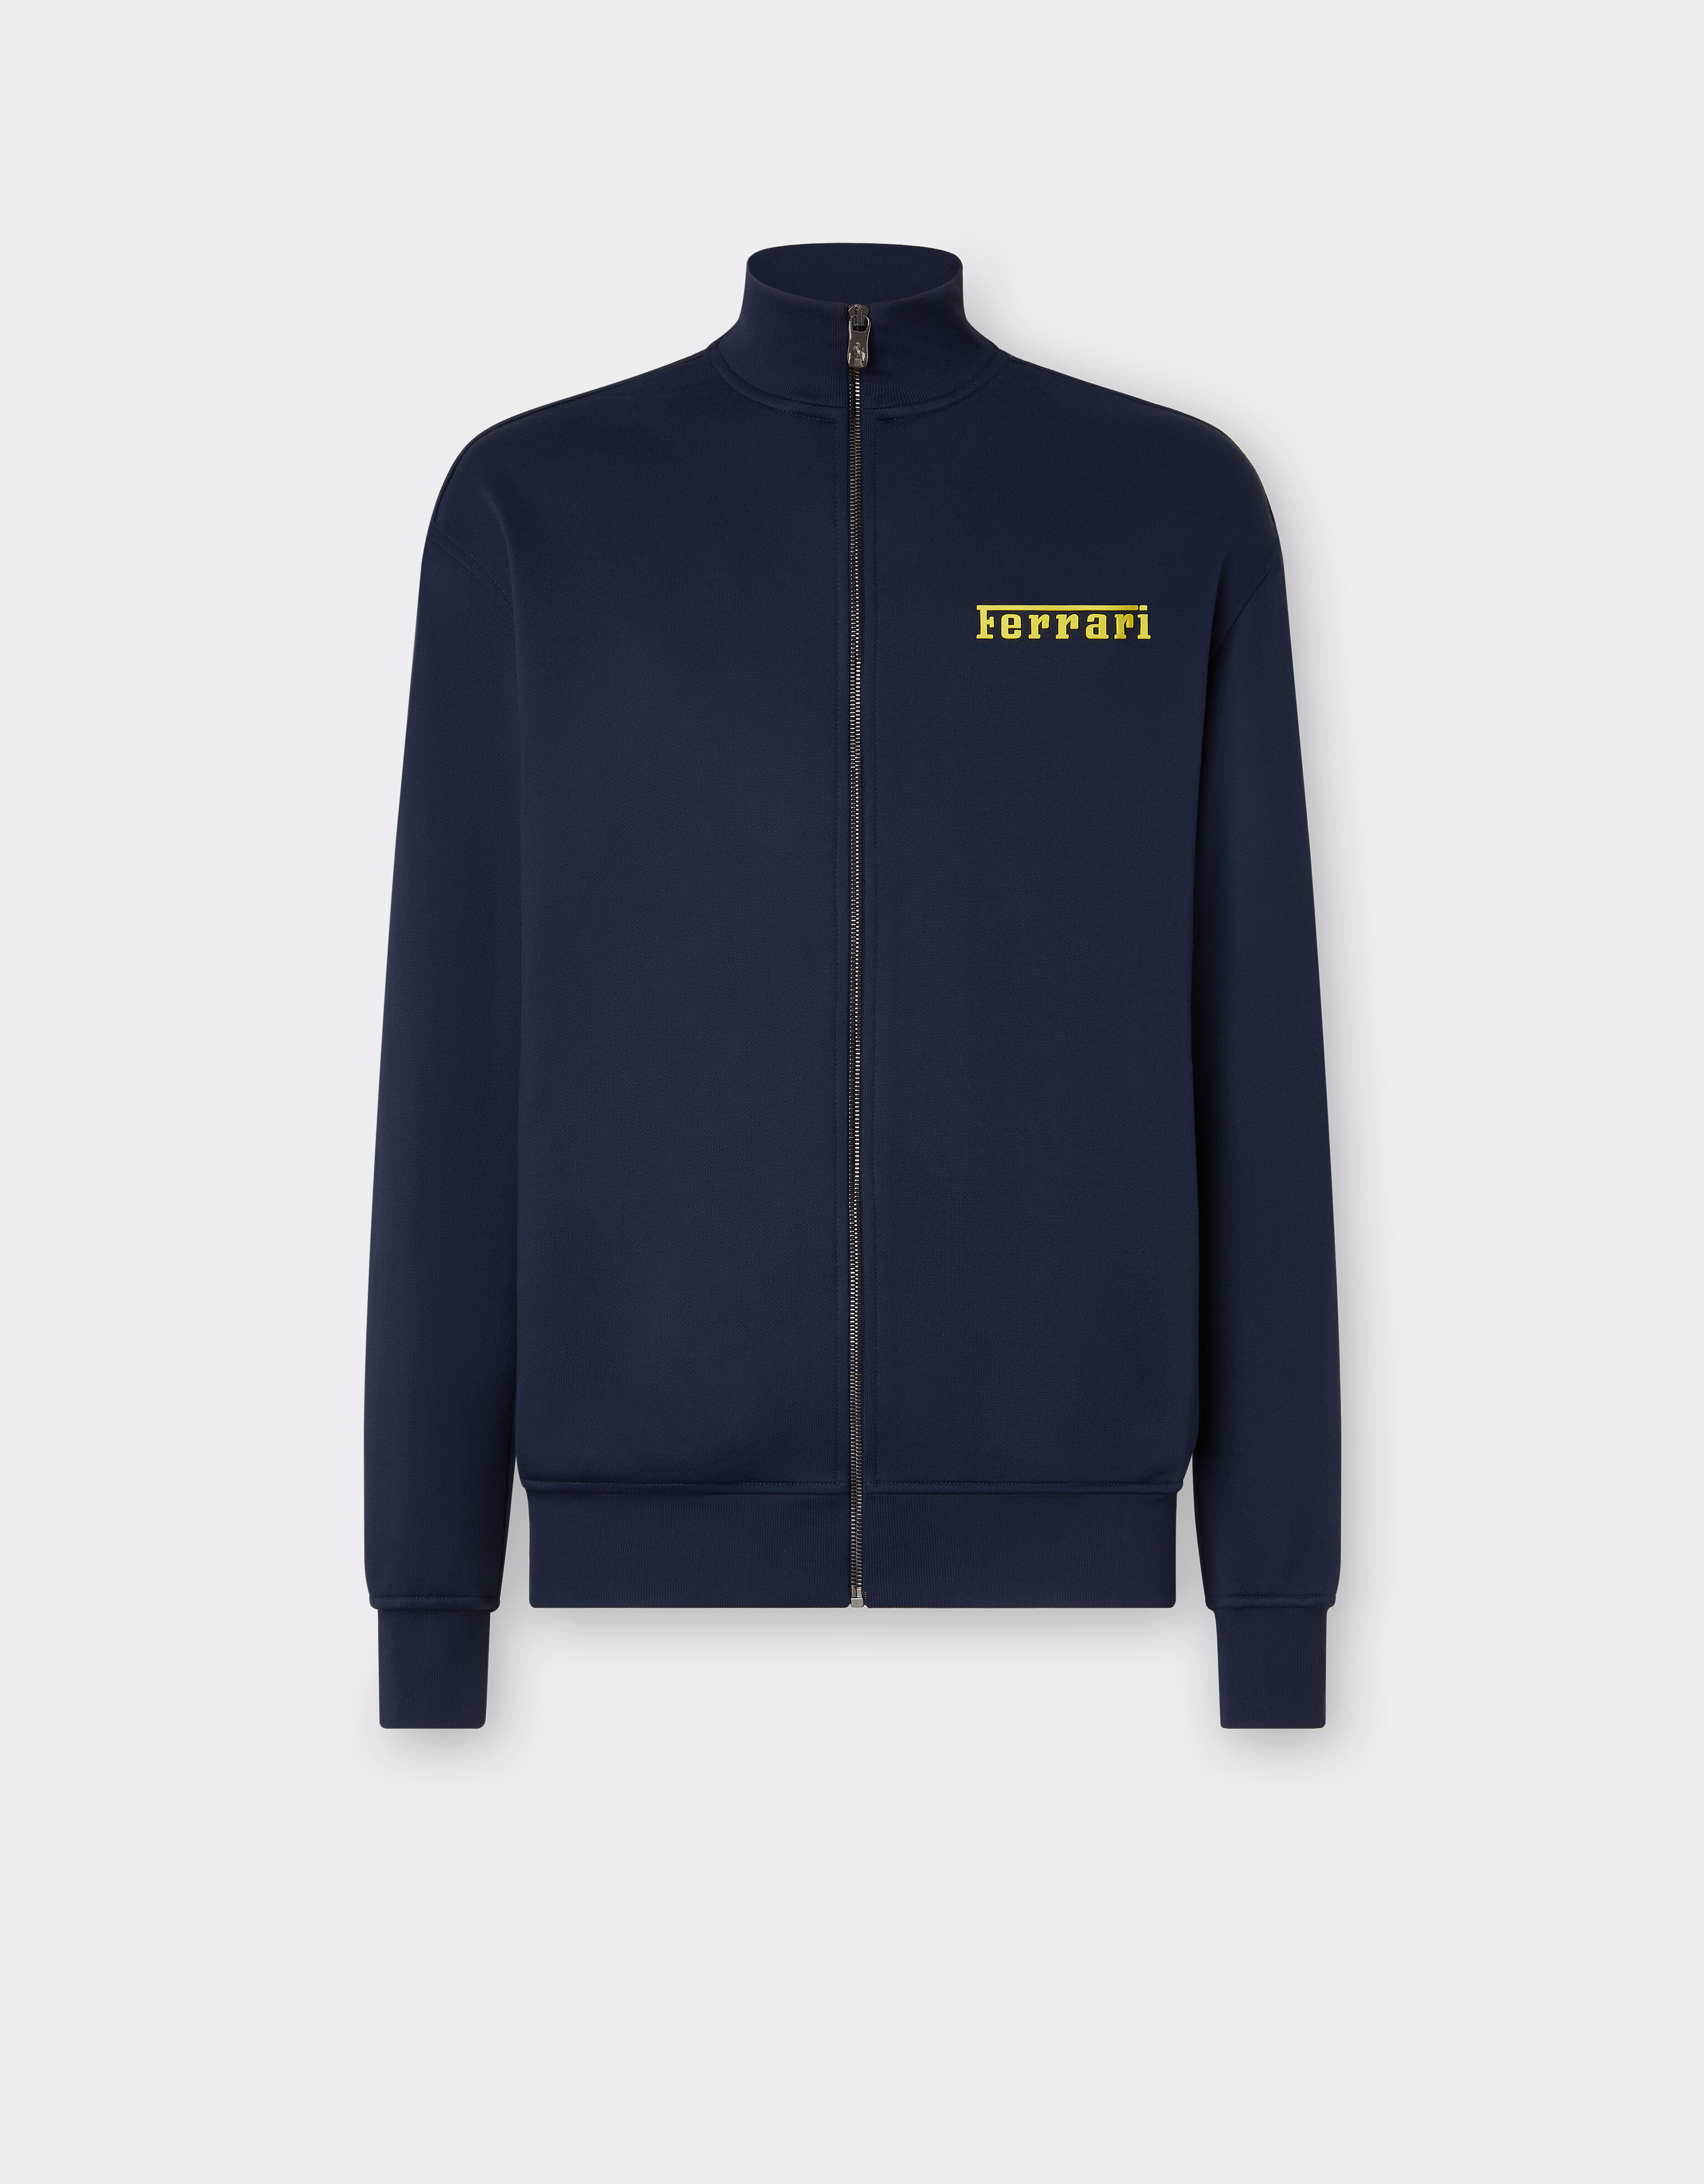 Ferrari Sweat-shirt avec fermeture Éclair et logo Ferrari Bleu marine 48267f